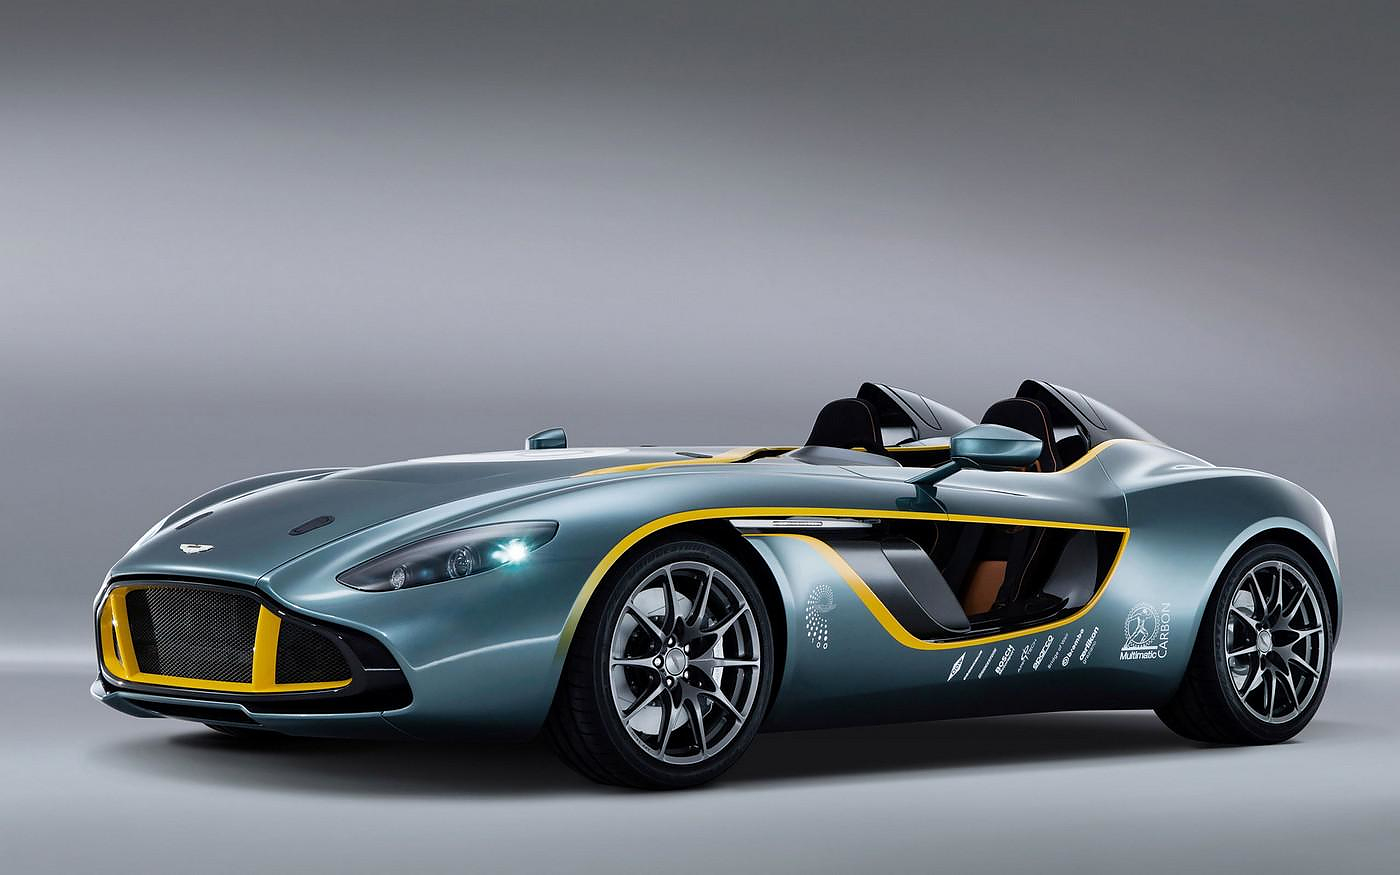 Aston Martin CC100 Speedster Concept Car.